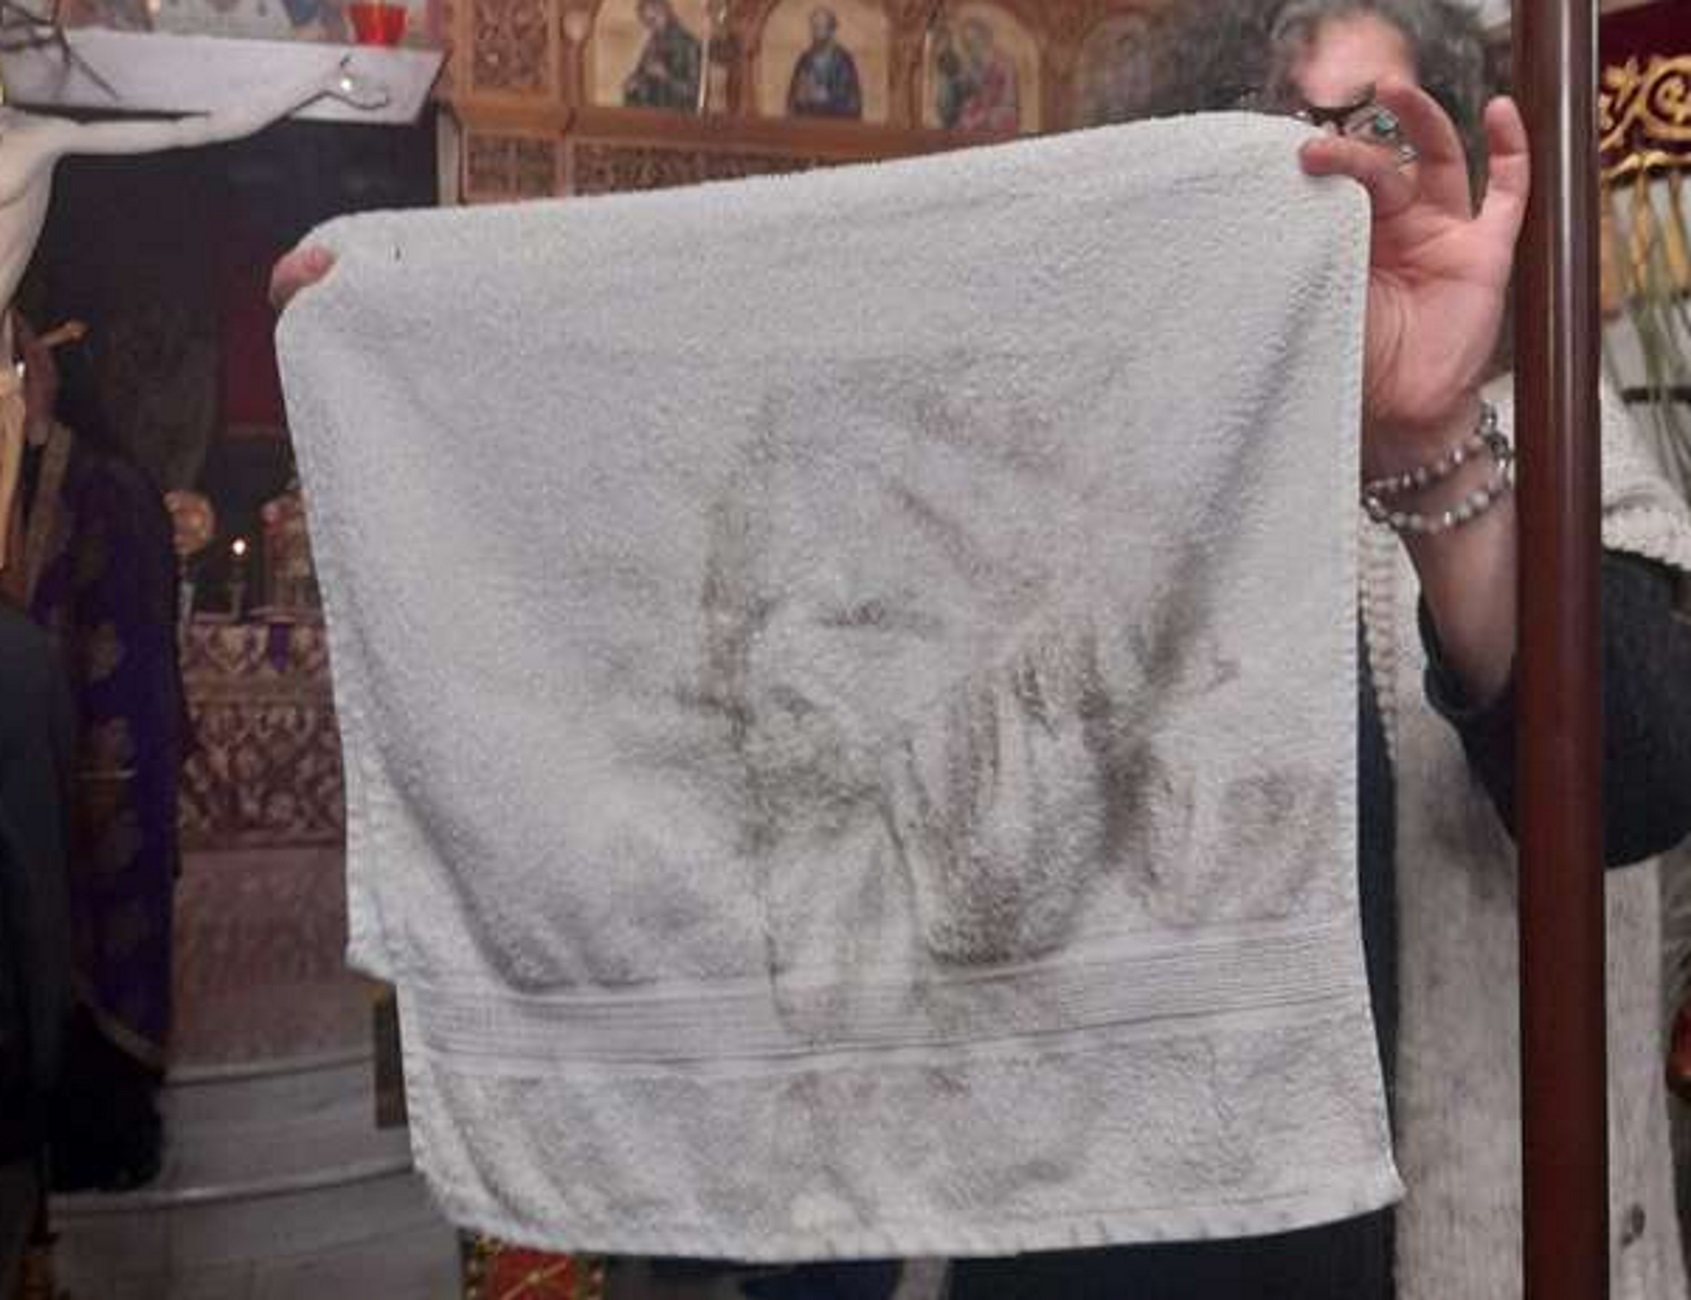 Ουρές πιστών σε εκκλησία μετά τη μορφή που σχηματίστηκε σε αυτή την πετσέτα